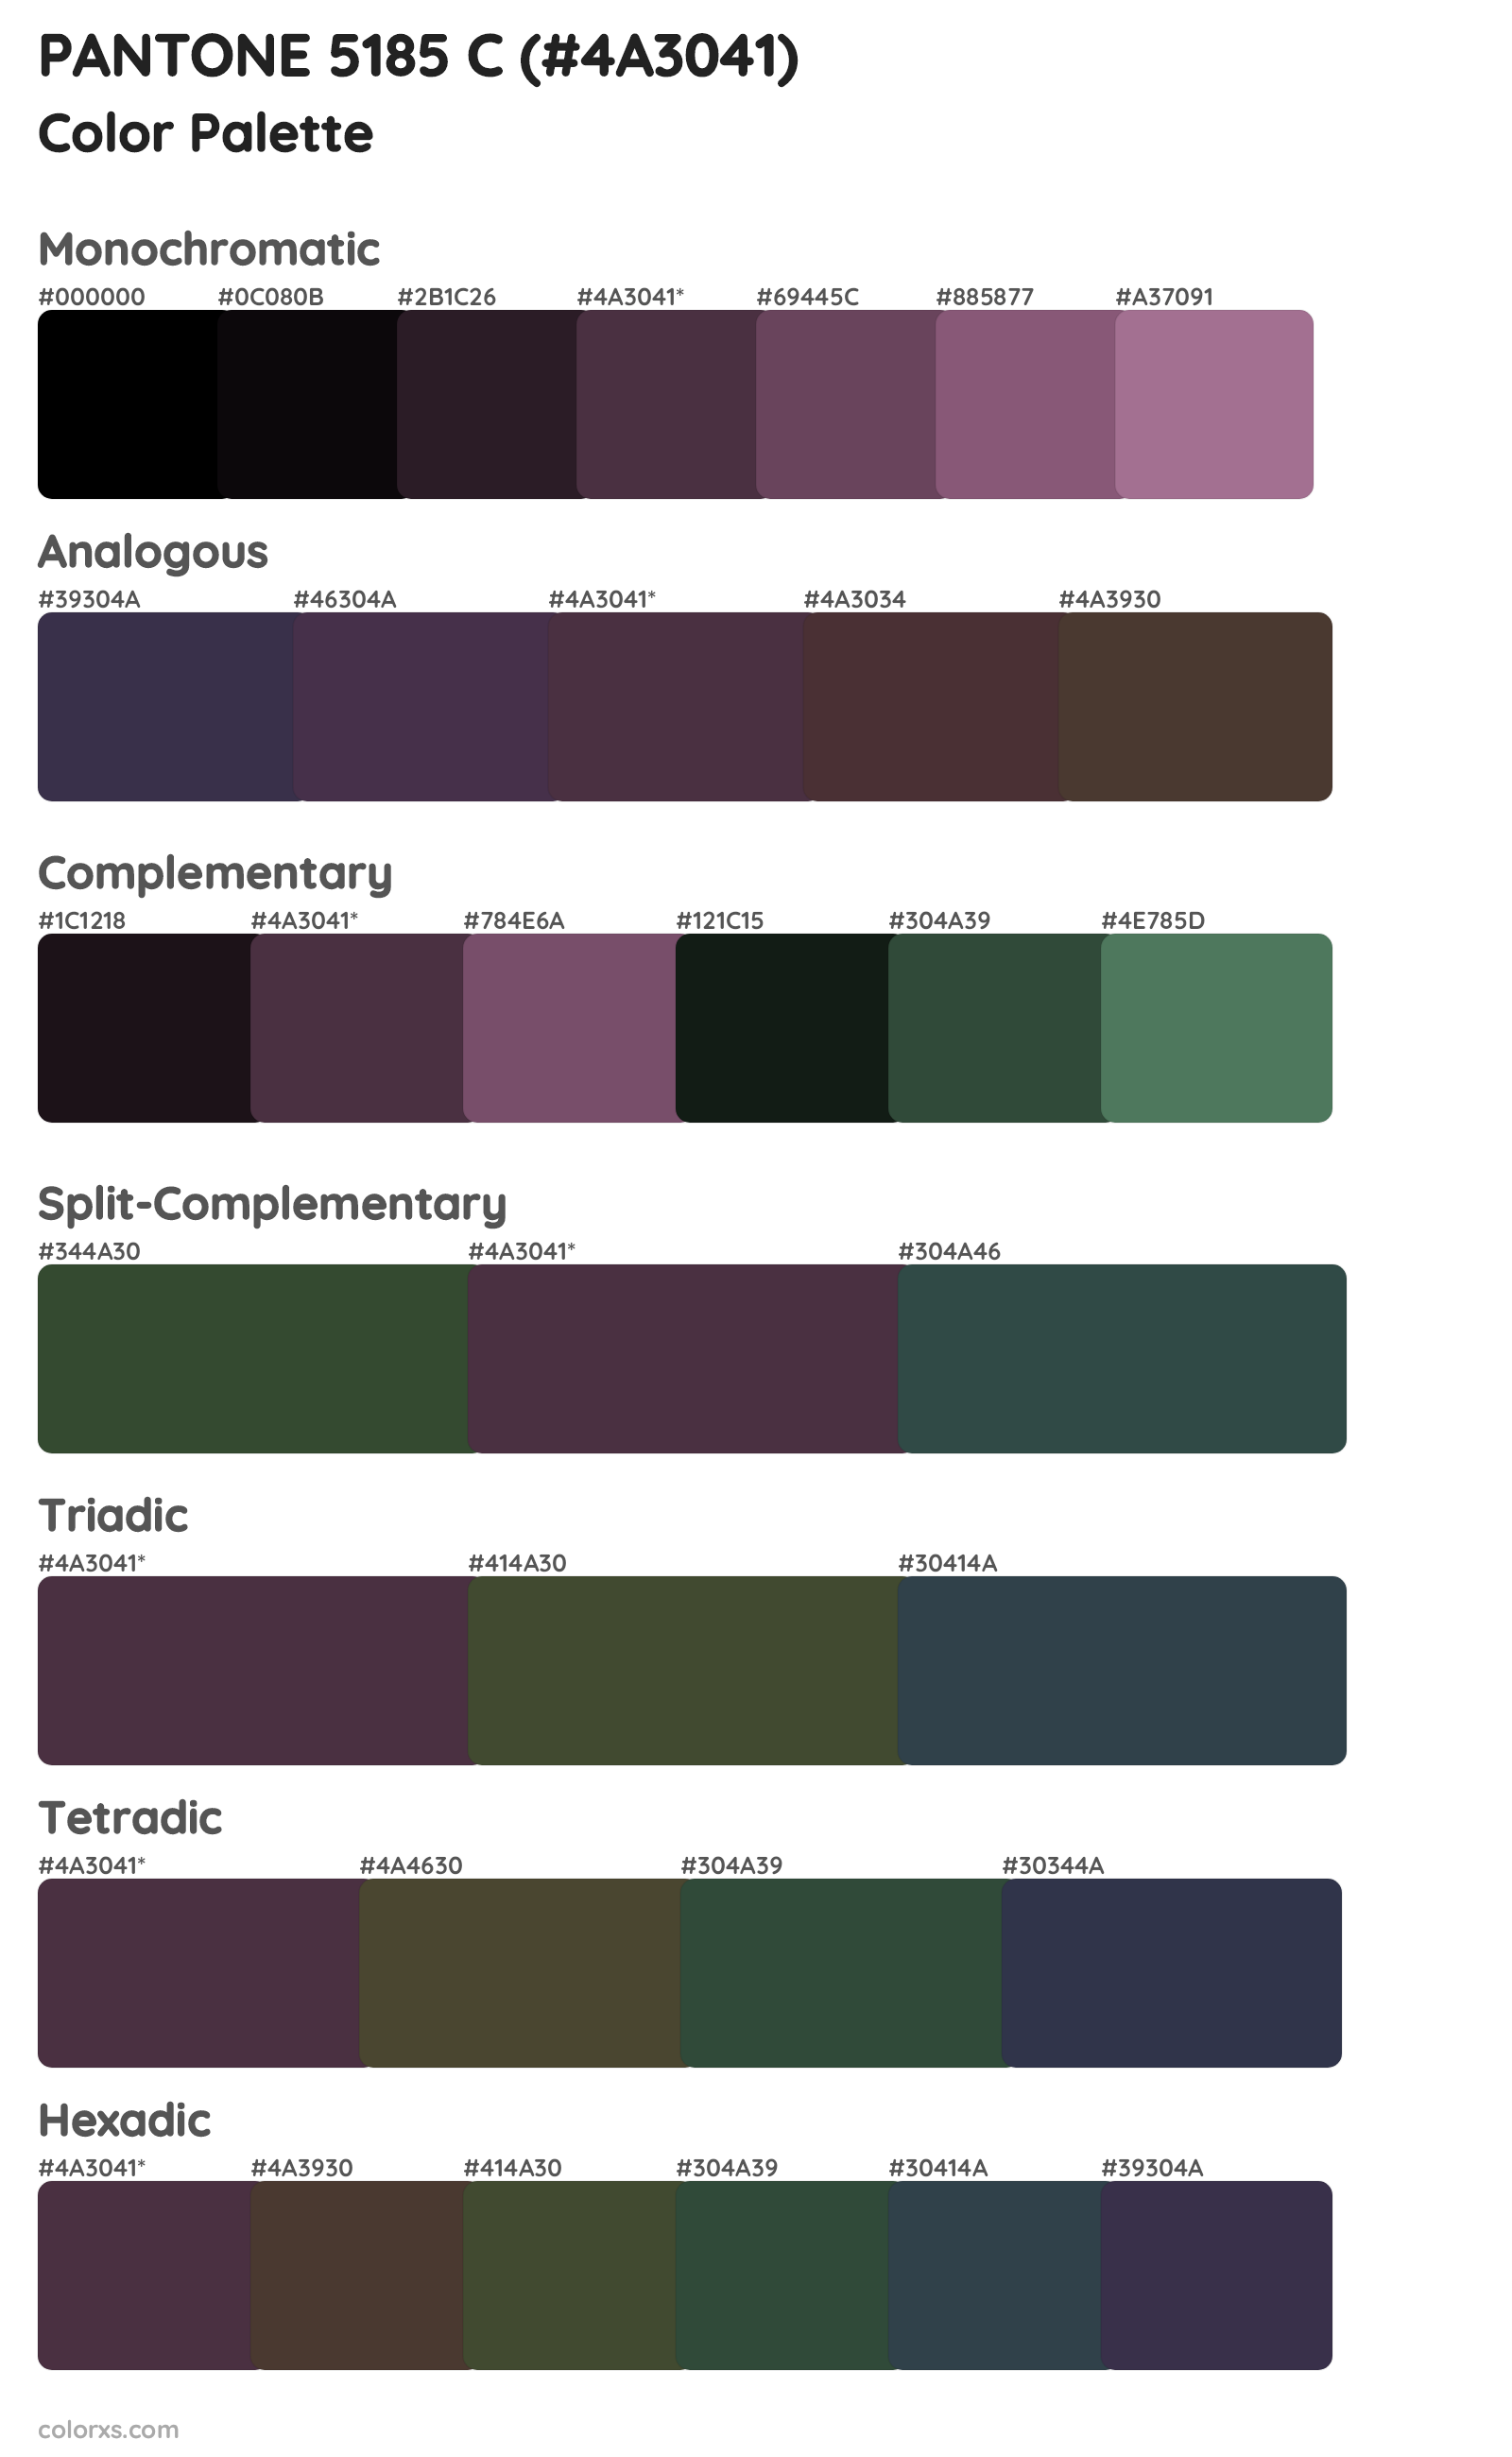 PANTONE 5185 C Color Scheme Palettes